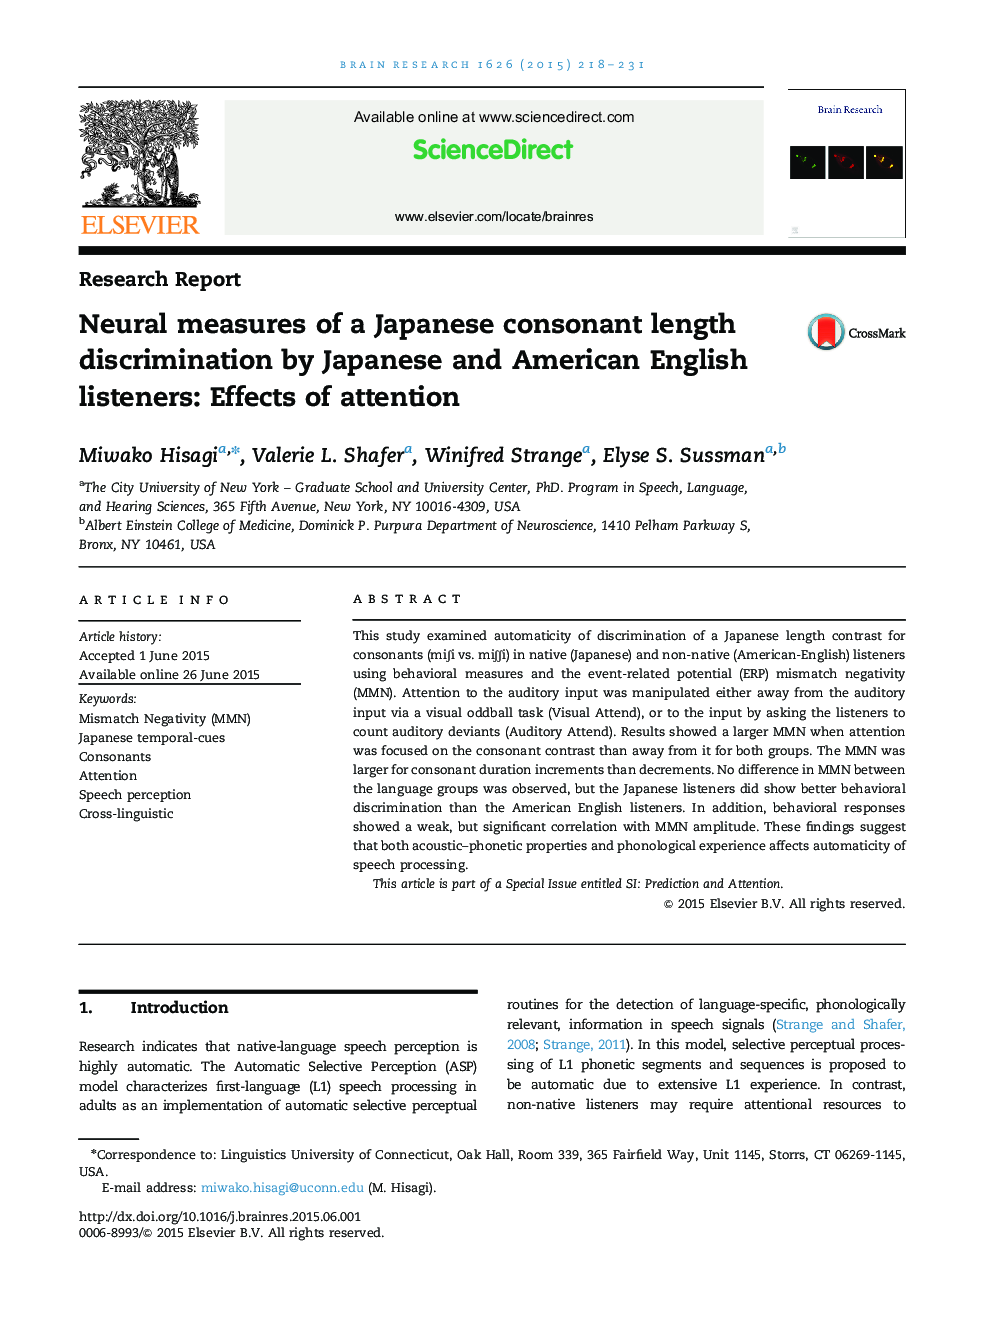 گزارش تحقیق. مقیاس های غیرقانونی تبعیض طول ژاپنی با شنوندگان انگلیسی ژاپنی و آمریکایی: تأثیر توجه 